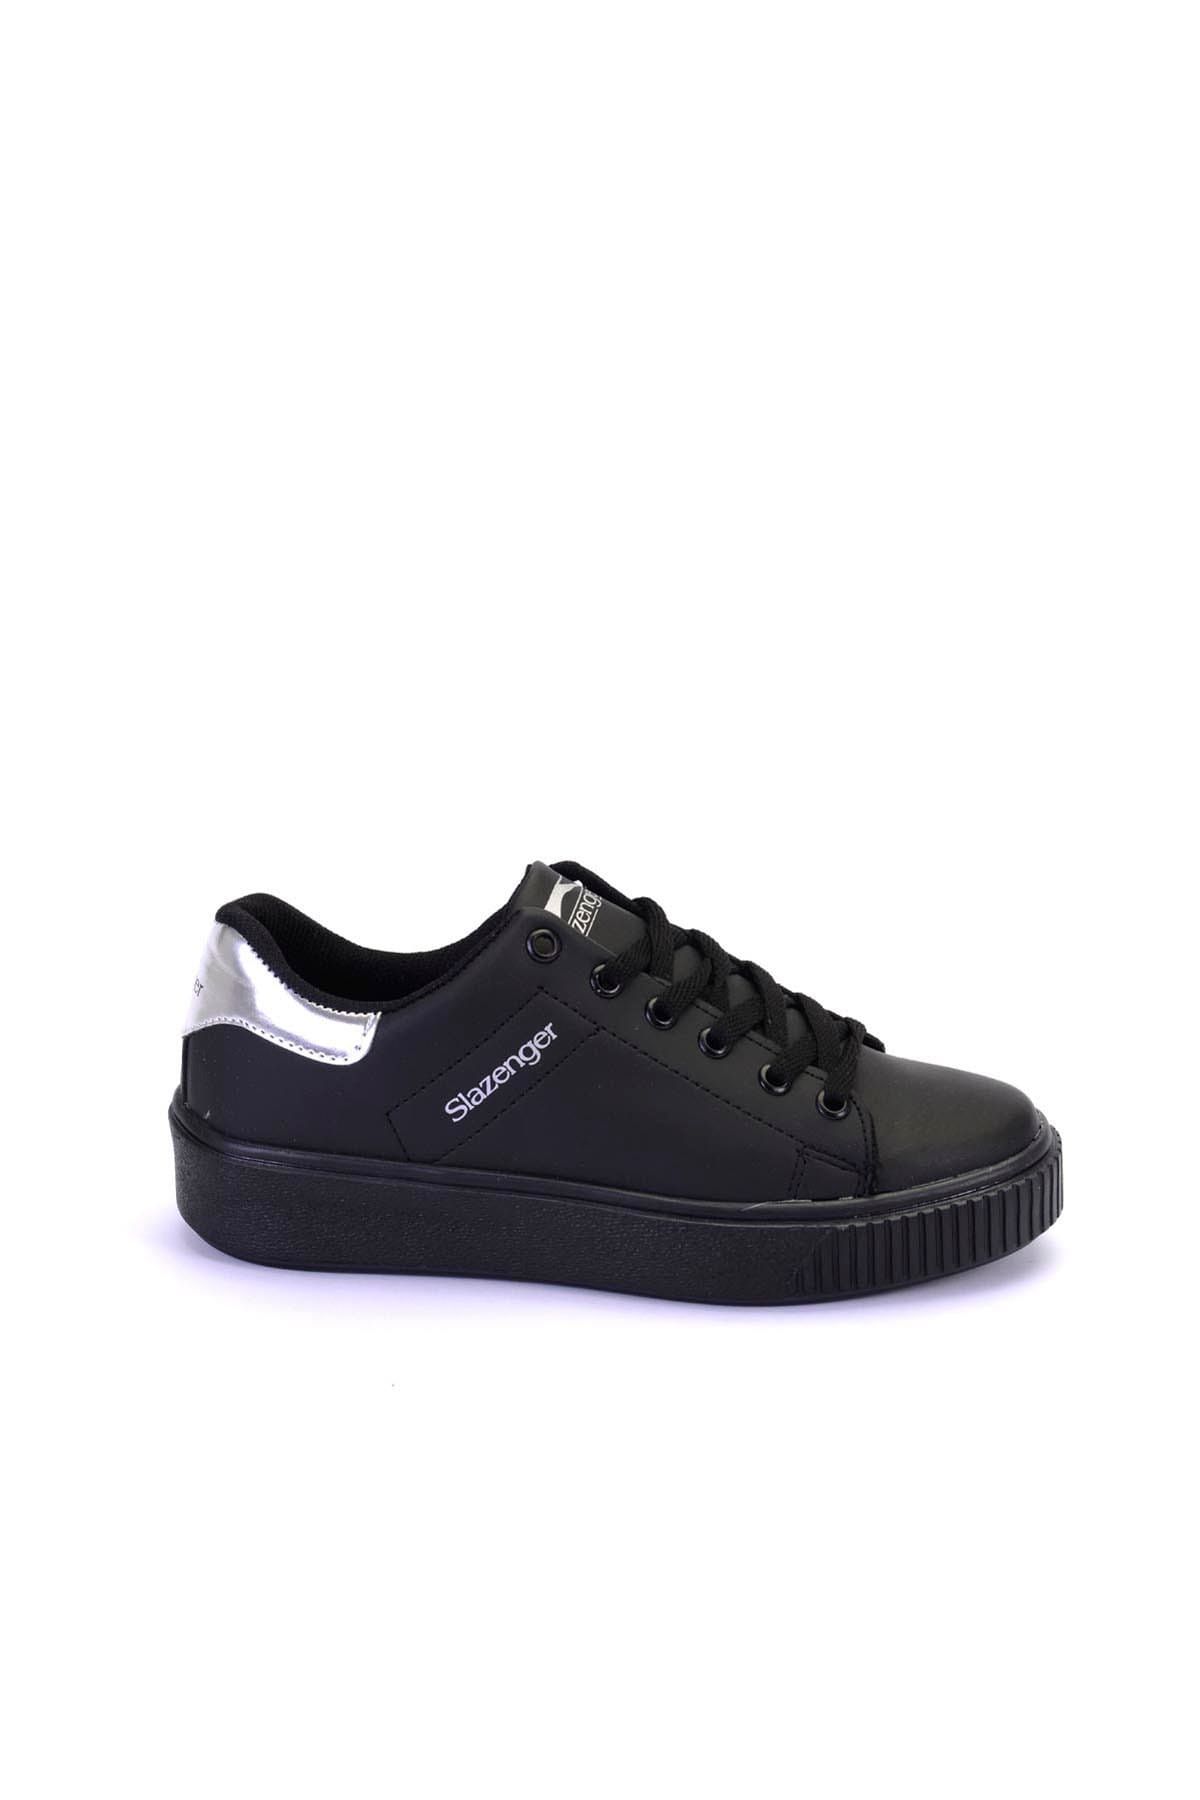 Slazenger Gala Sneaker Kadın Ayakkabı Siyah / Gümüş